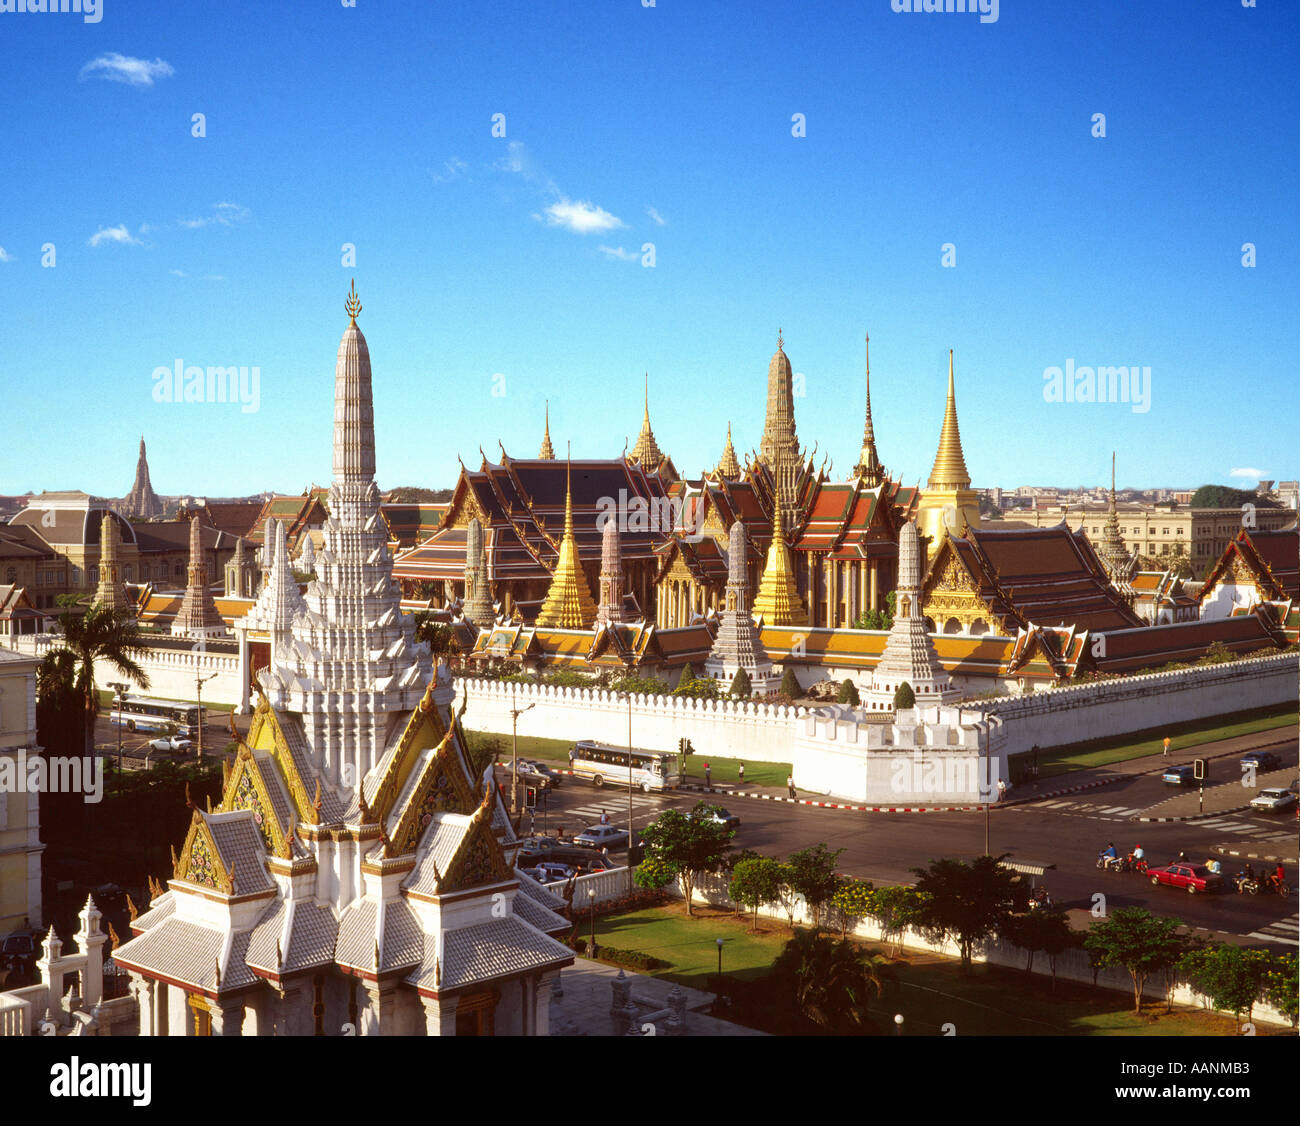 Thailand Bangkok Wat Phra Keo Royal Palace elevated view Stock Photo